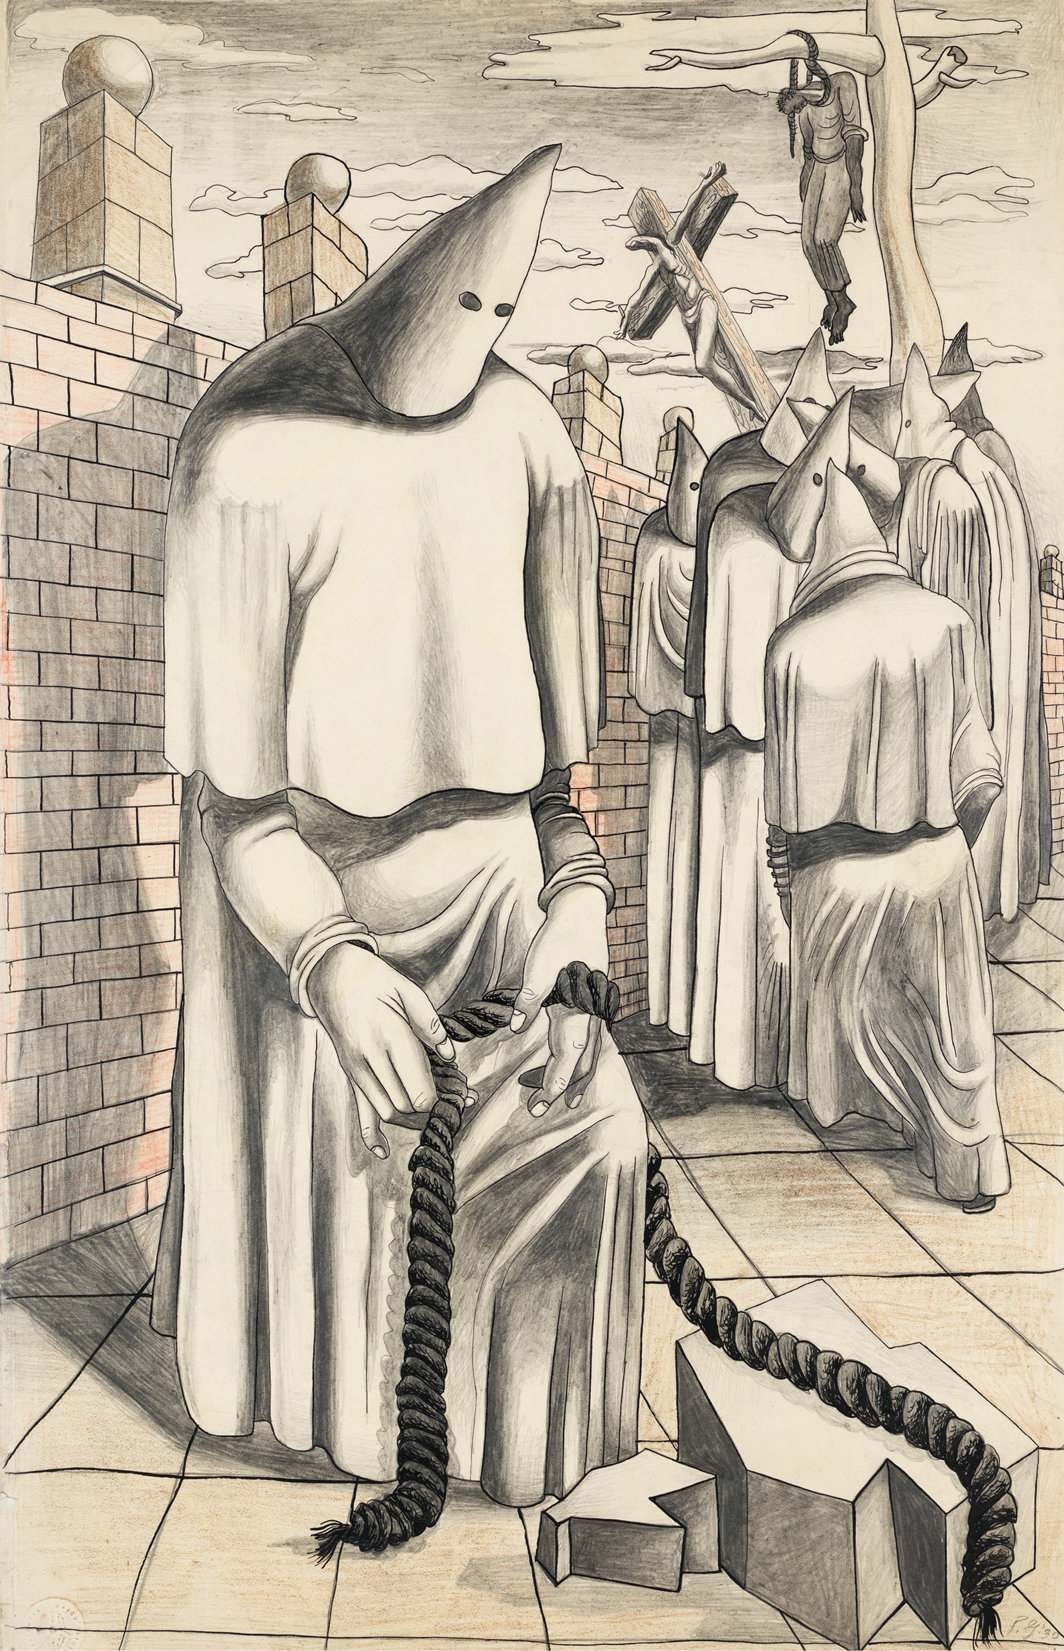 菲利普·加斯顿，《为同谋者作画》，1930，石墨铅笔、墨水、彩色铅笔和蜡笔，纸本，22 5⁄8 x 14 5⁄8".